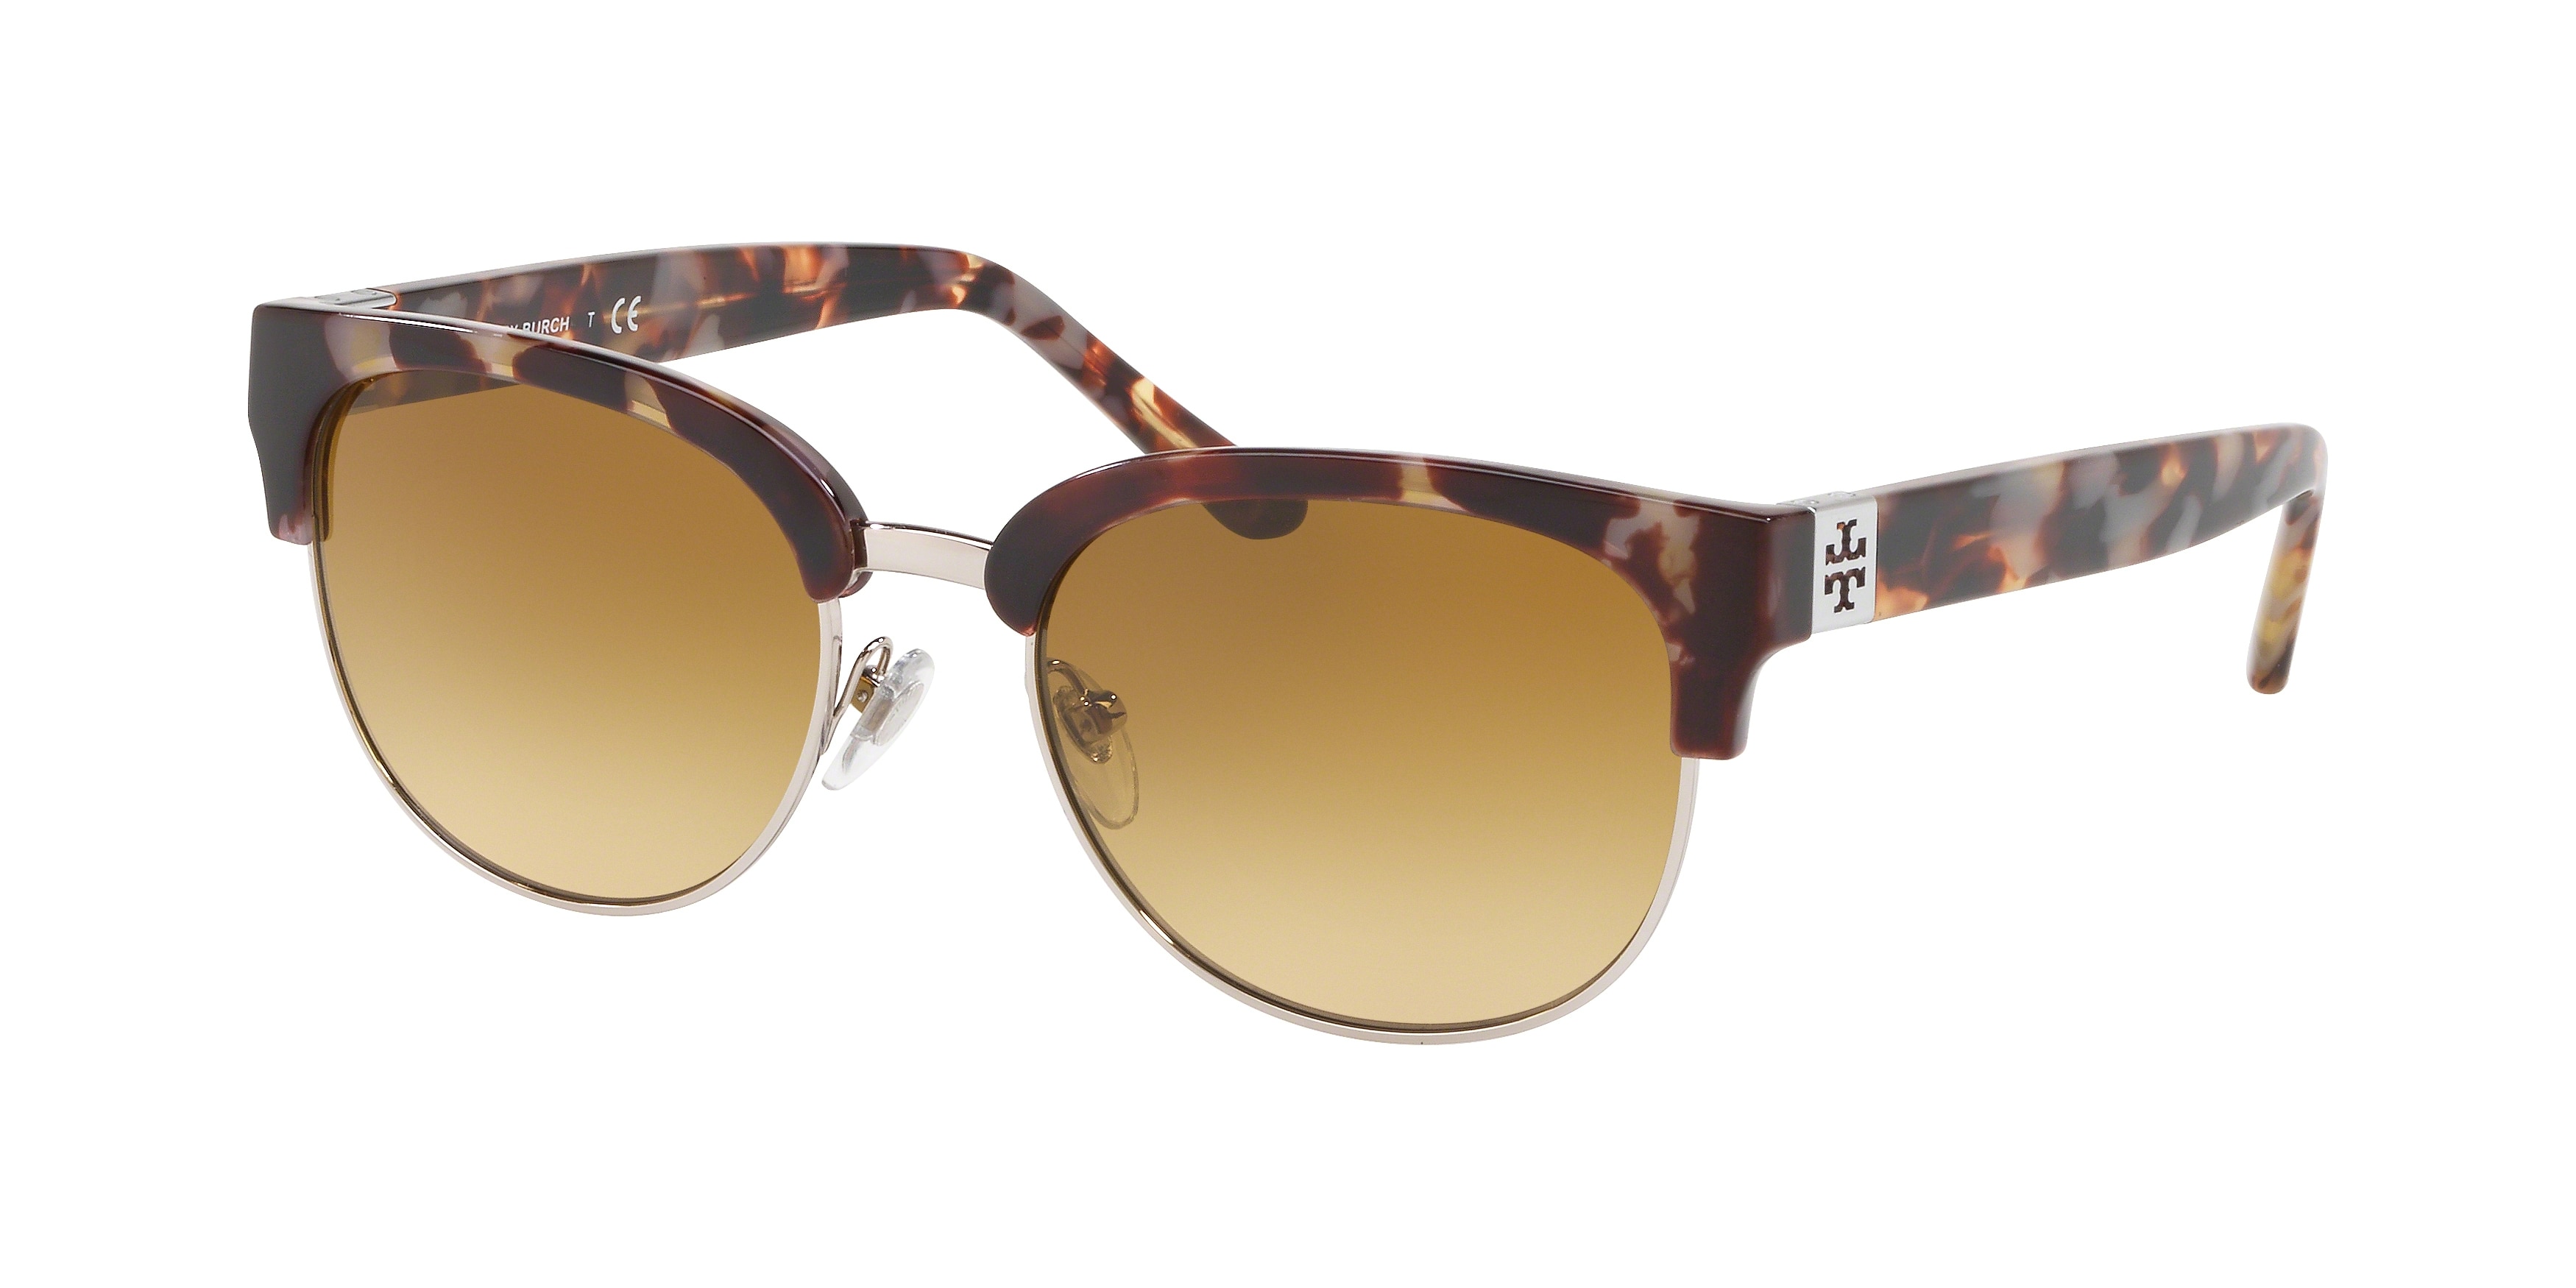 Tory Burch Sunglasses - Luxury Designerware Sunglasses